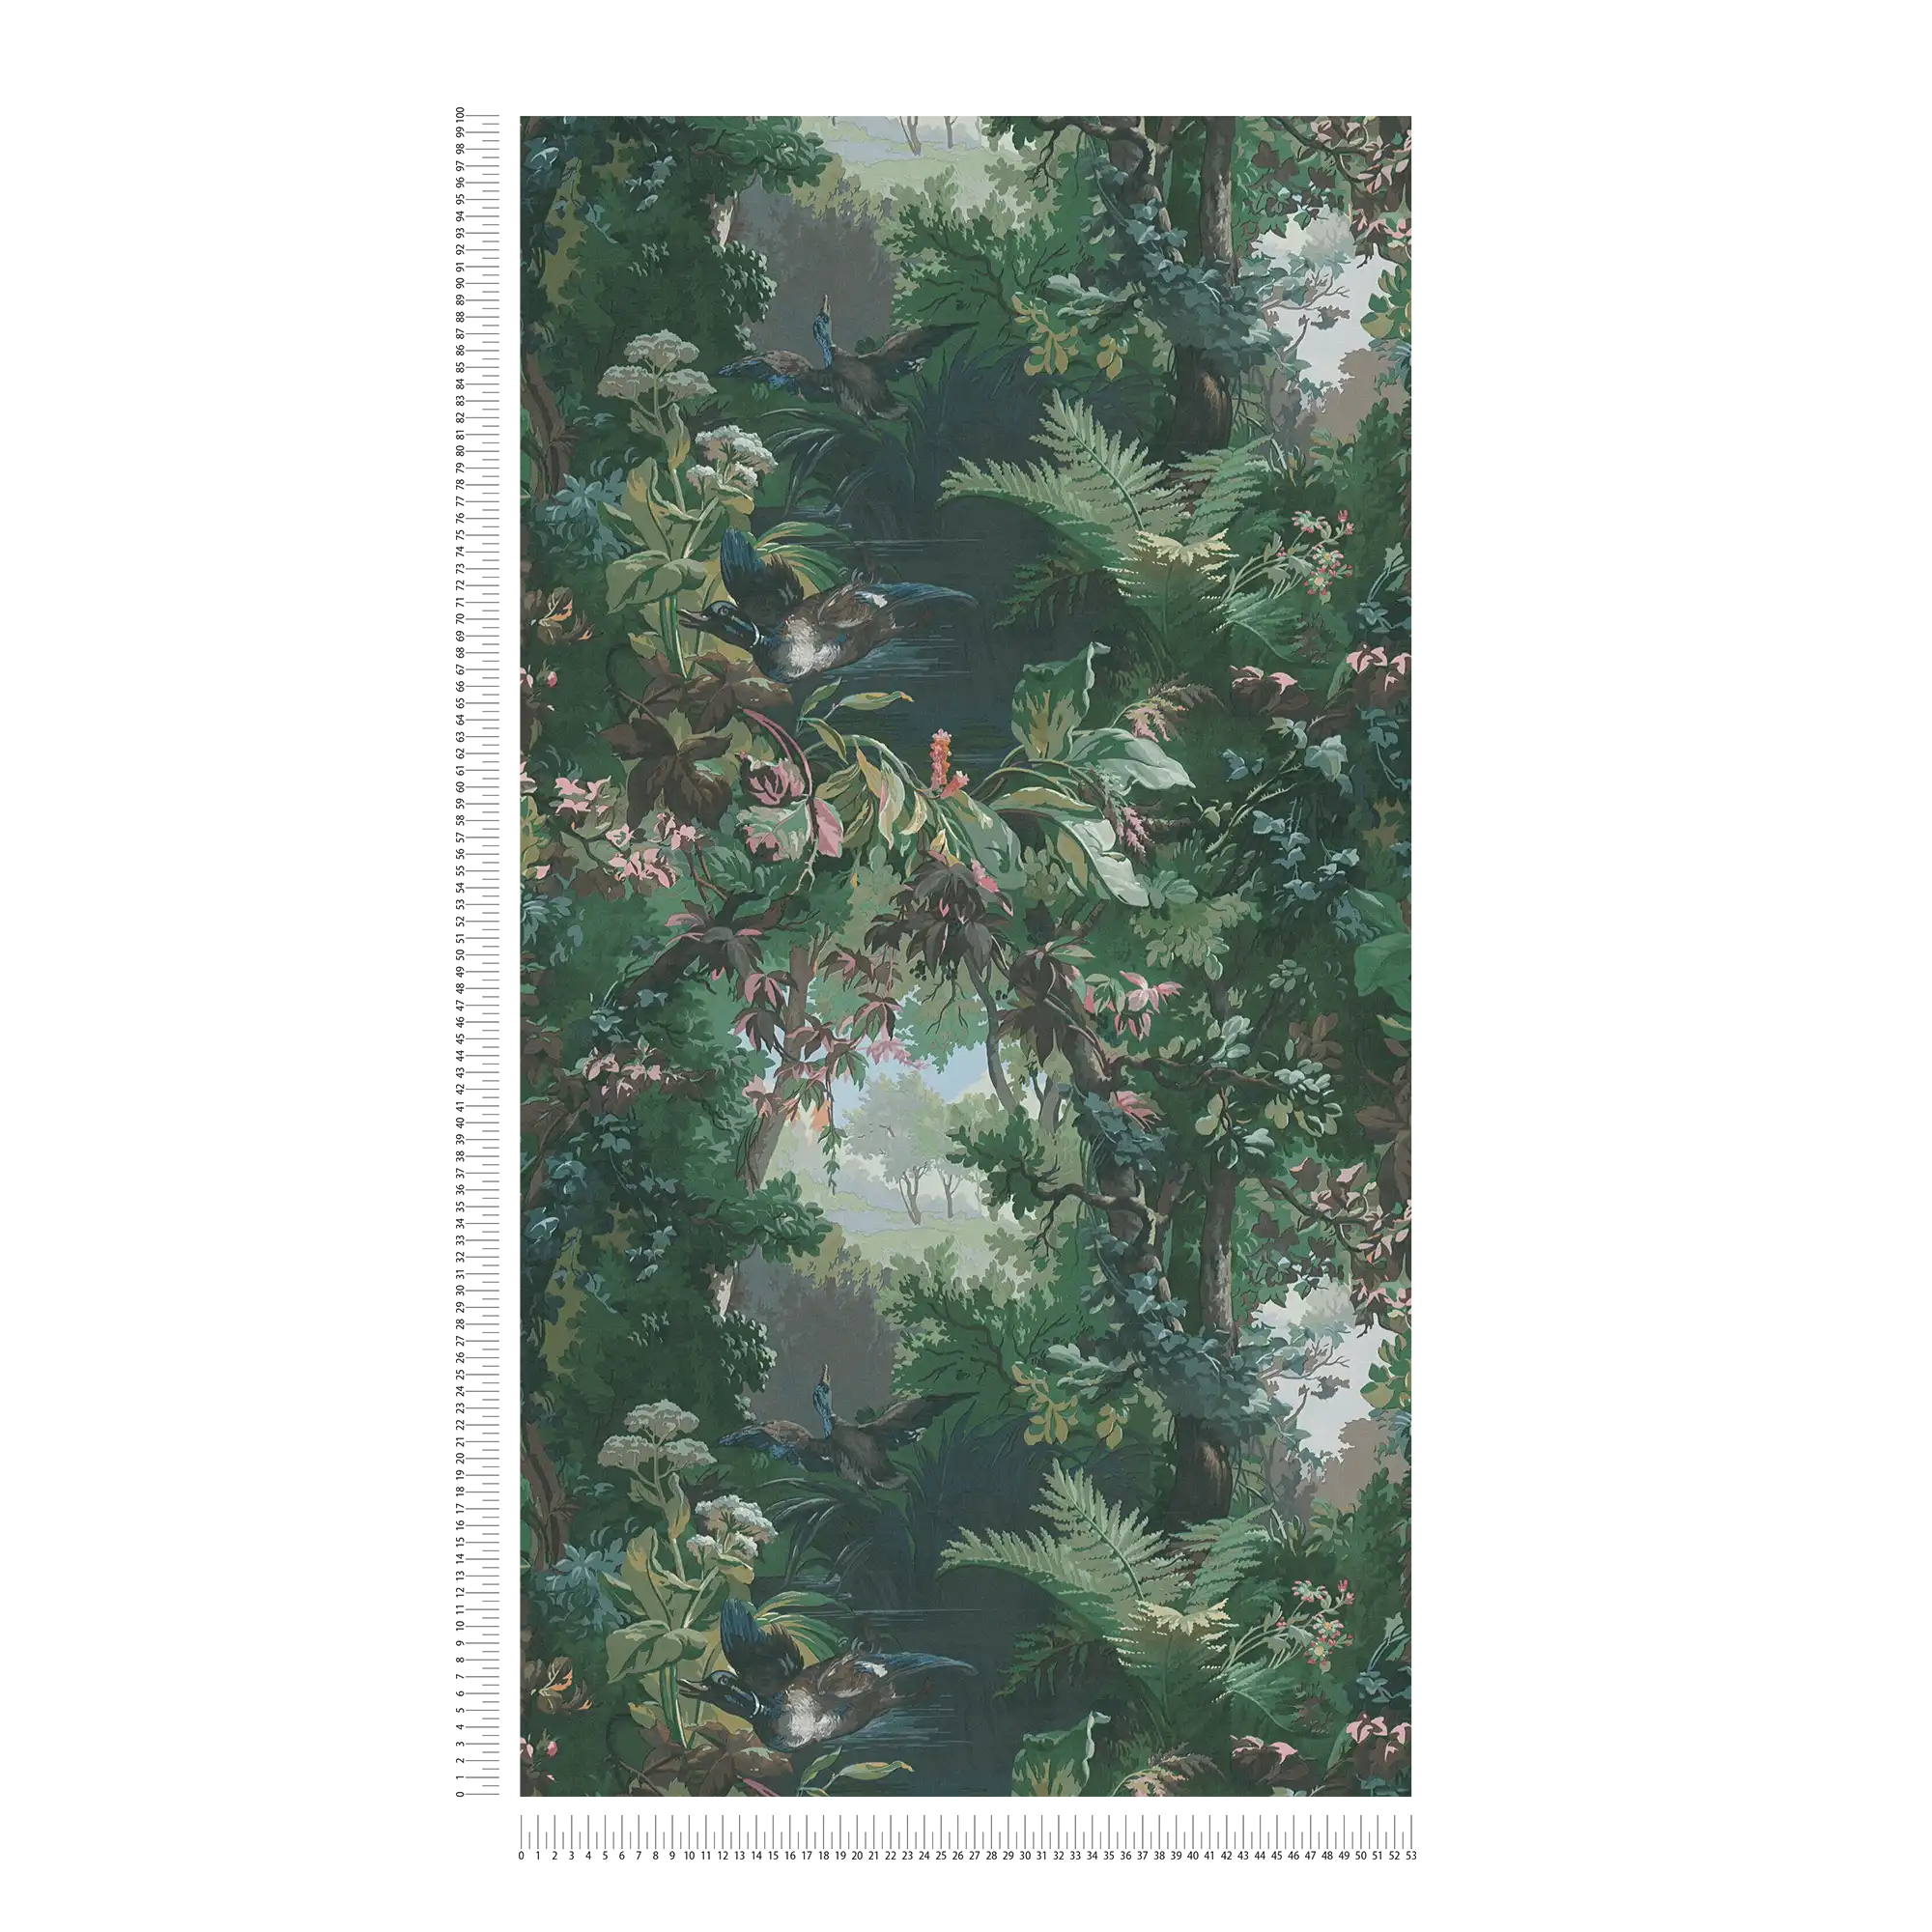             Behang met jachtmotief, bos & eenden - groen, blauw, roze
        